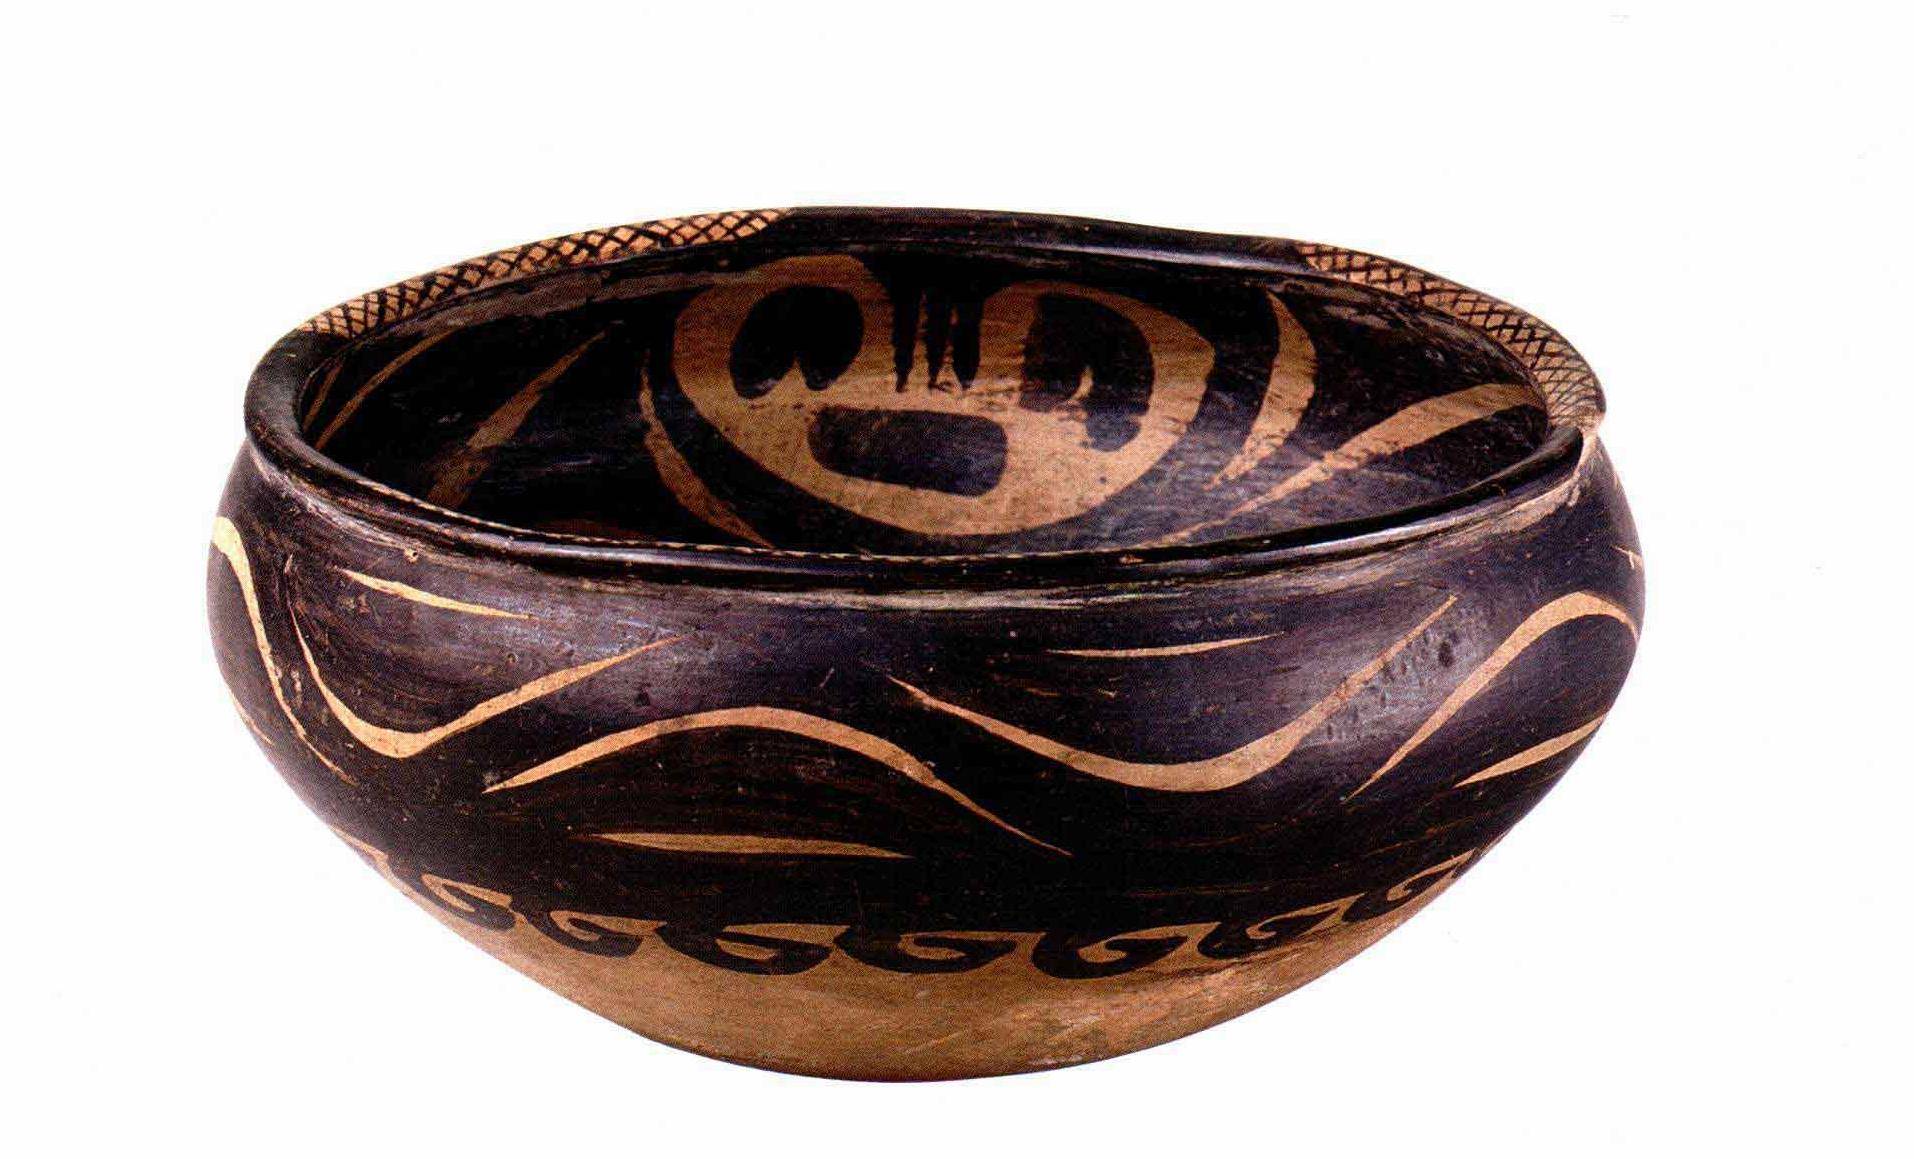 原创中国陶瓷文化,故宫收藏的新时代陶器,具有重要历史价值